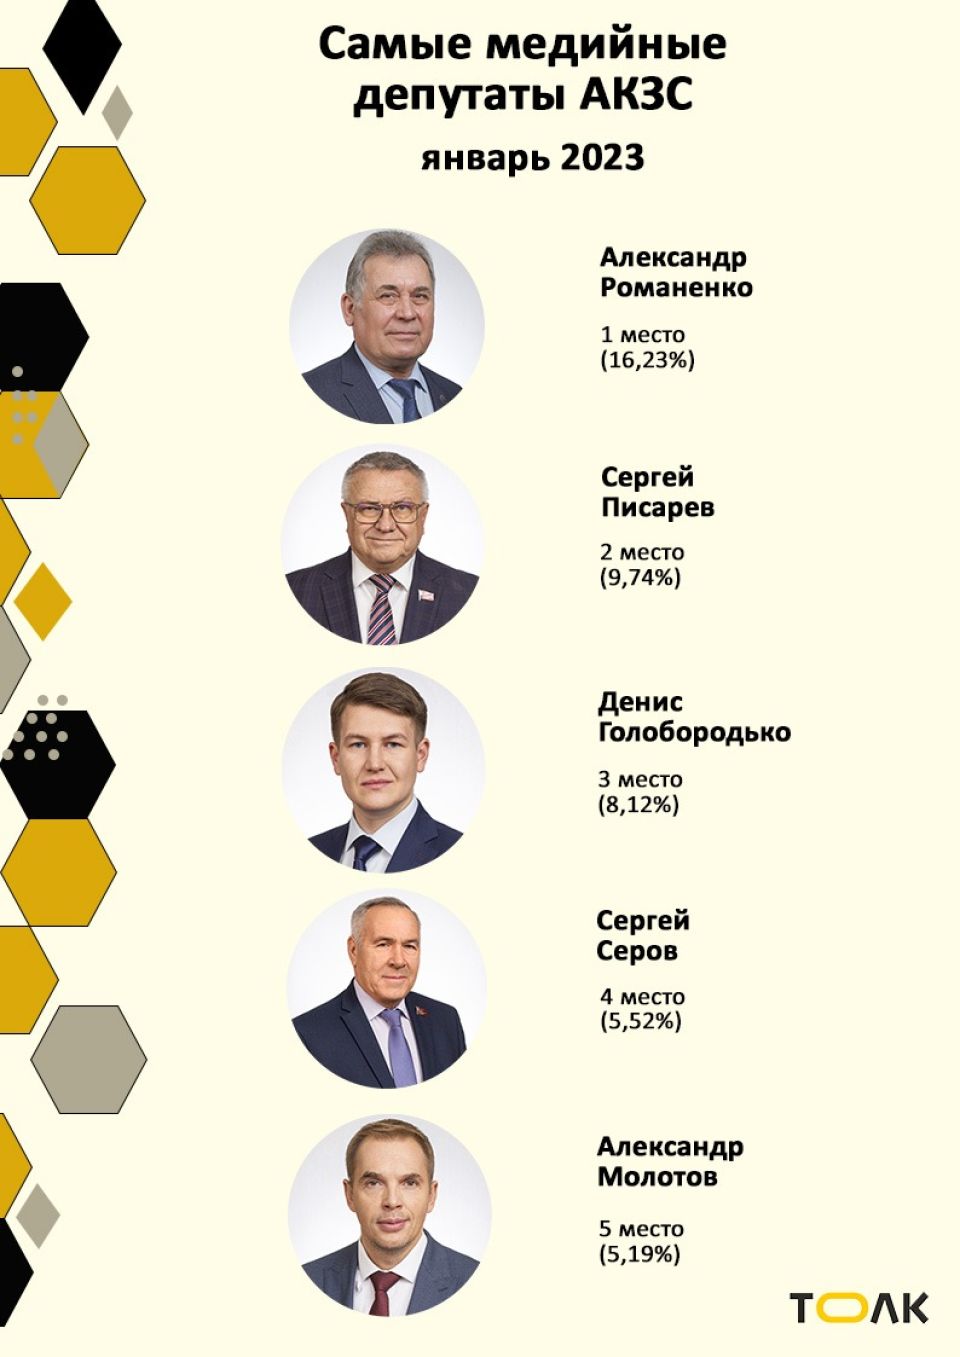 Рейтинг медийности депутатов АКЗС в январе 2022 года